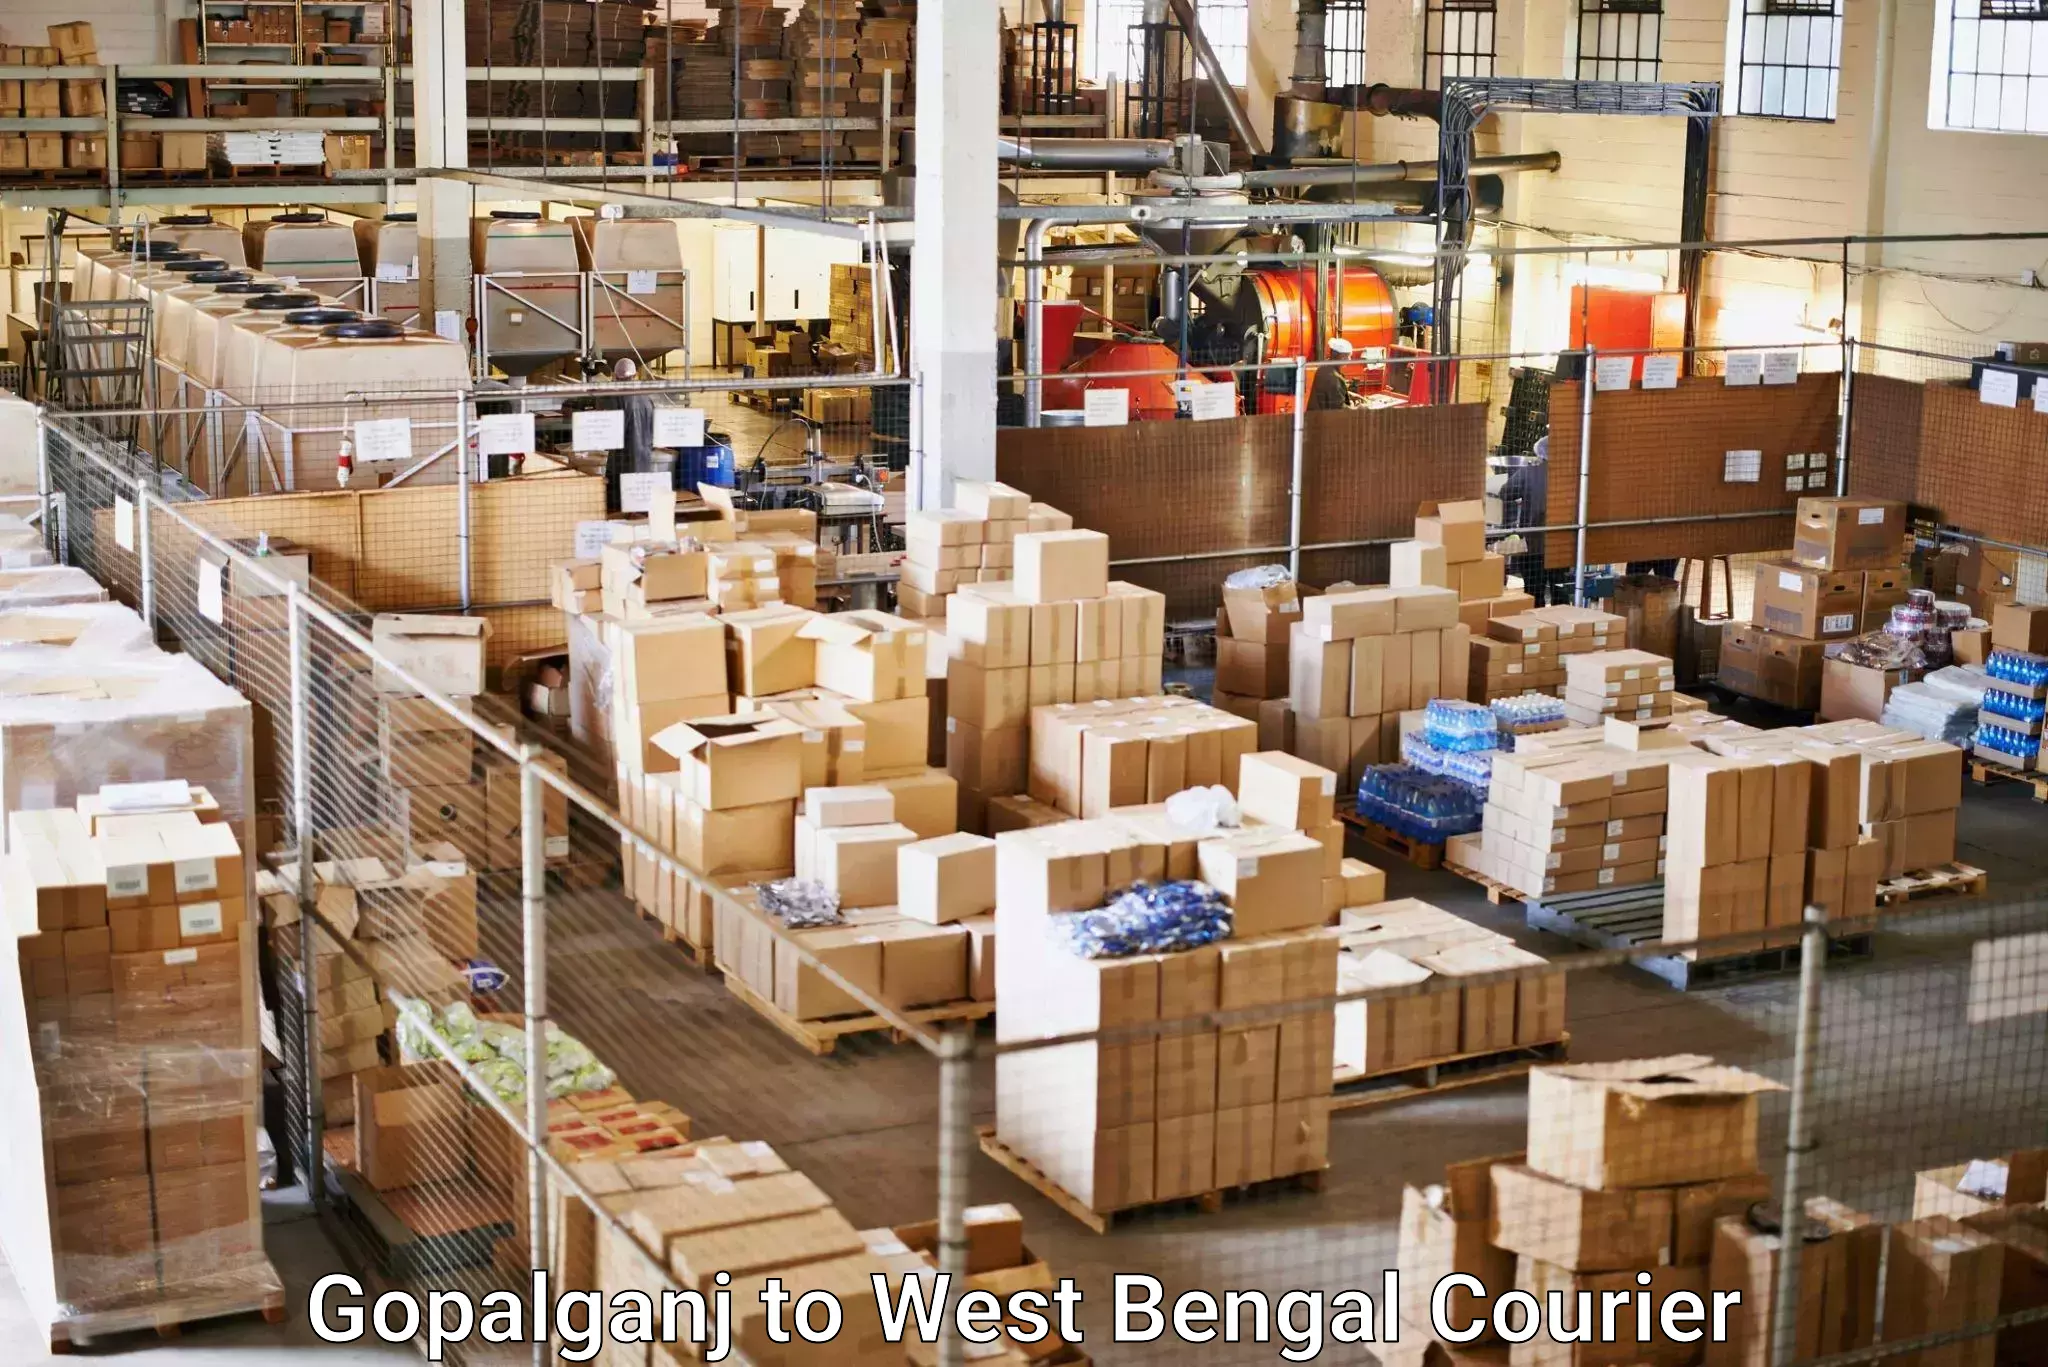 Shipping and handling Gopalganj to Bhaddi